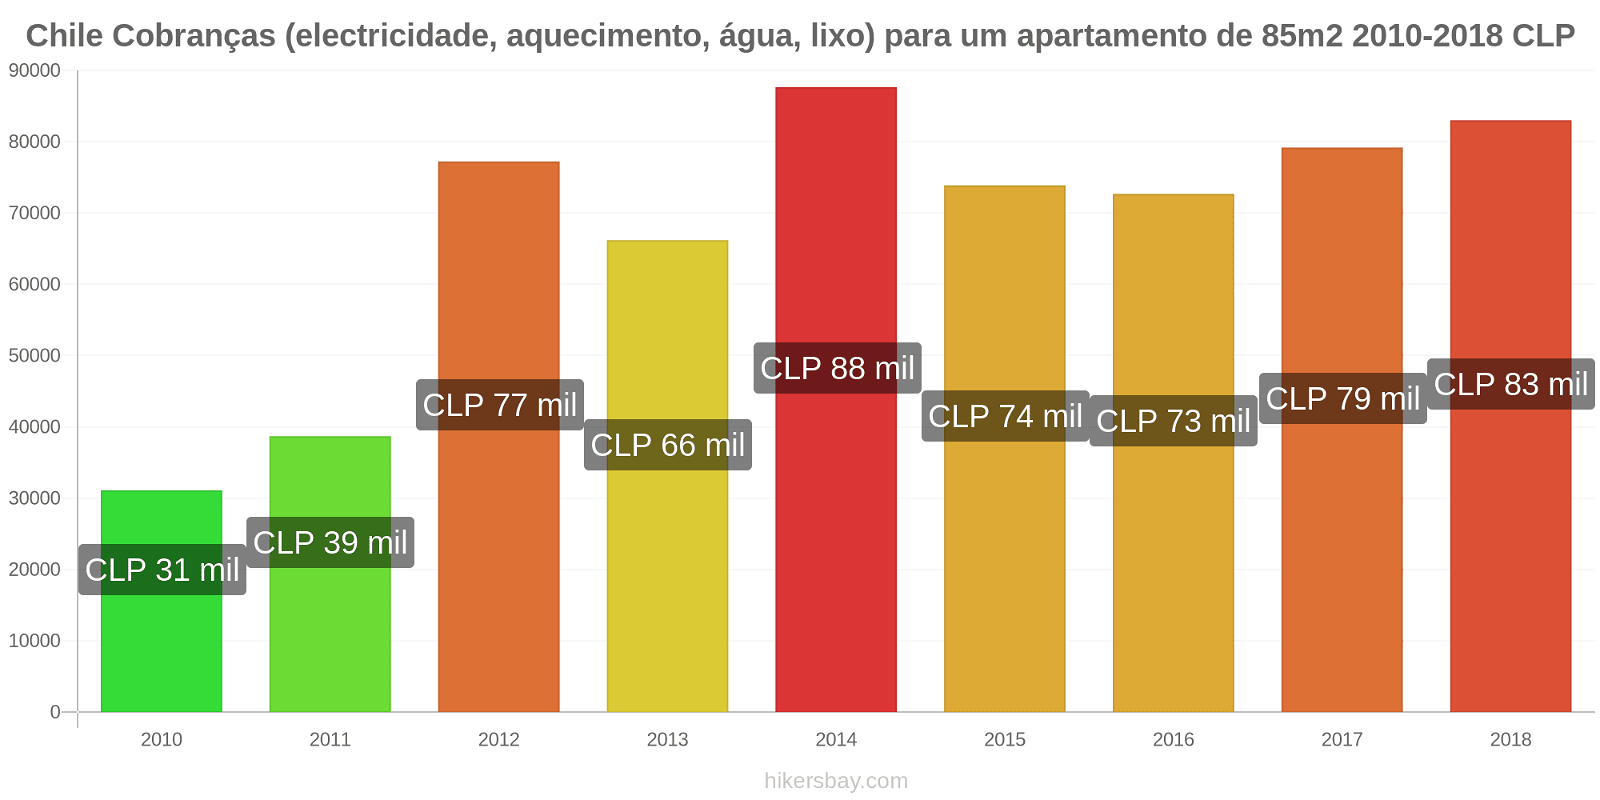 Chile mudanças de preços Despesas (eletricidade, aquecimento, água, lixo) para um apartamento de 85m2 hikersbay.com